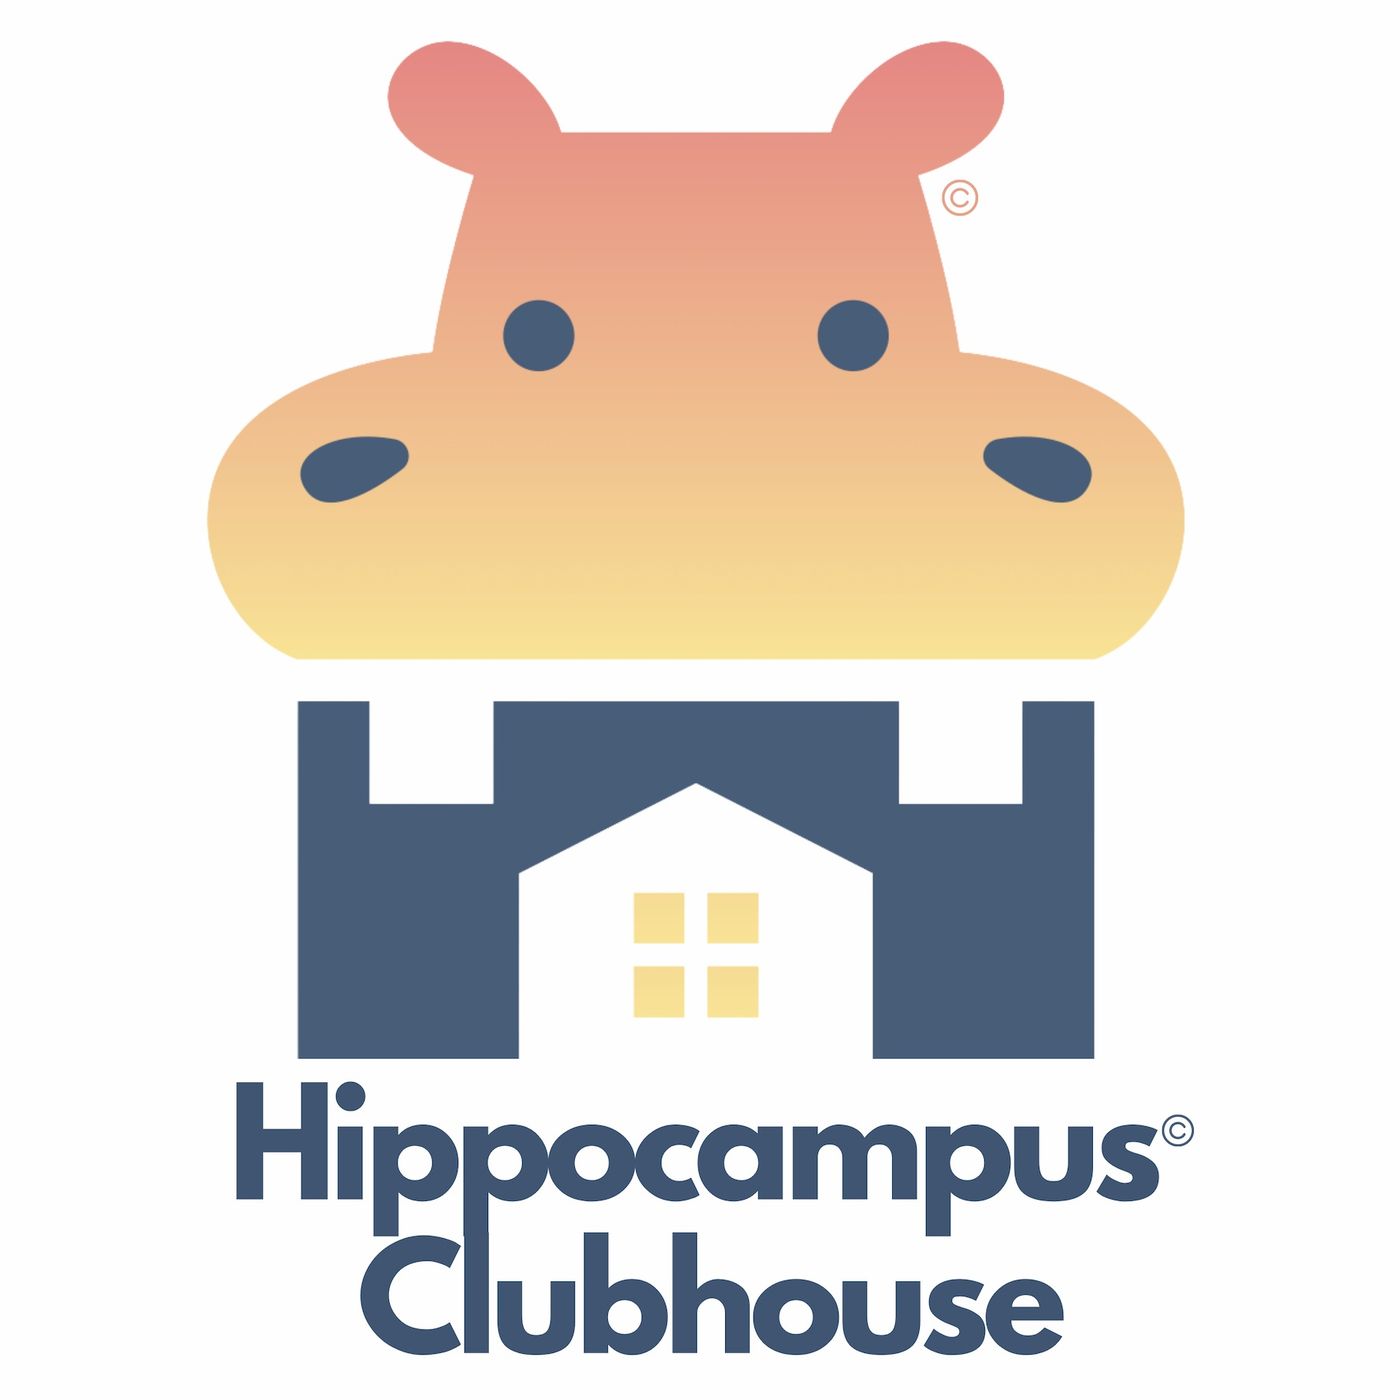 233: Hippocampus Clubhouse En Español: El Monstrudo De Colores